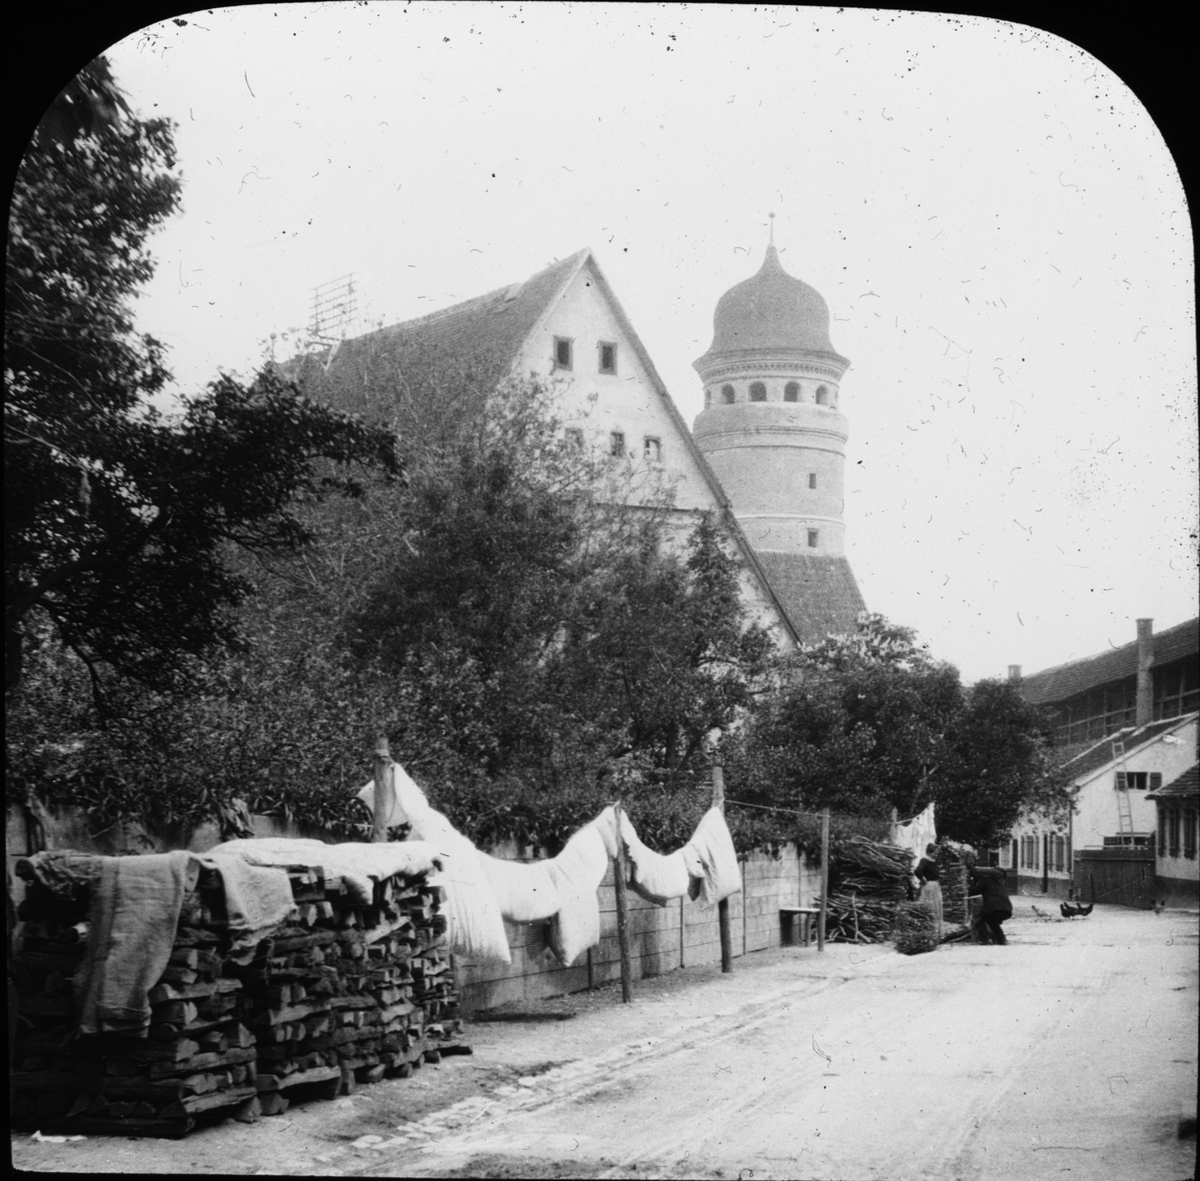 Skioptikonbild med motiv från Nördlingen.
Bilden har förvarats i kartong märkt: Resan 1911 Schwäbische Hall. Schloss Kronburg. XX.. Text på bild: "Nördlingen".